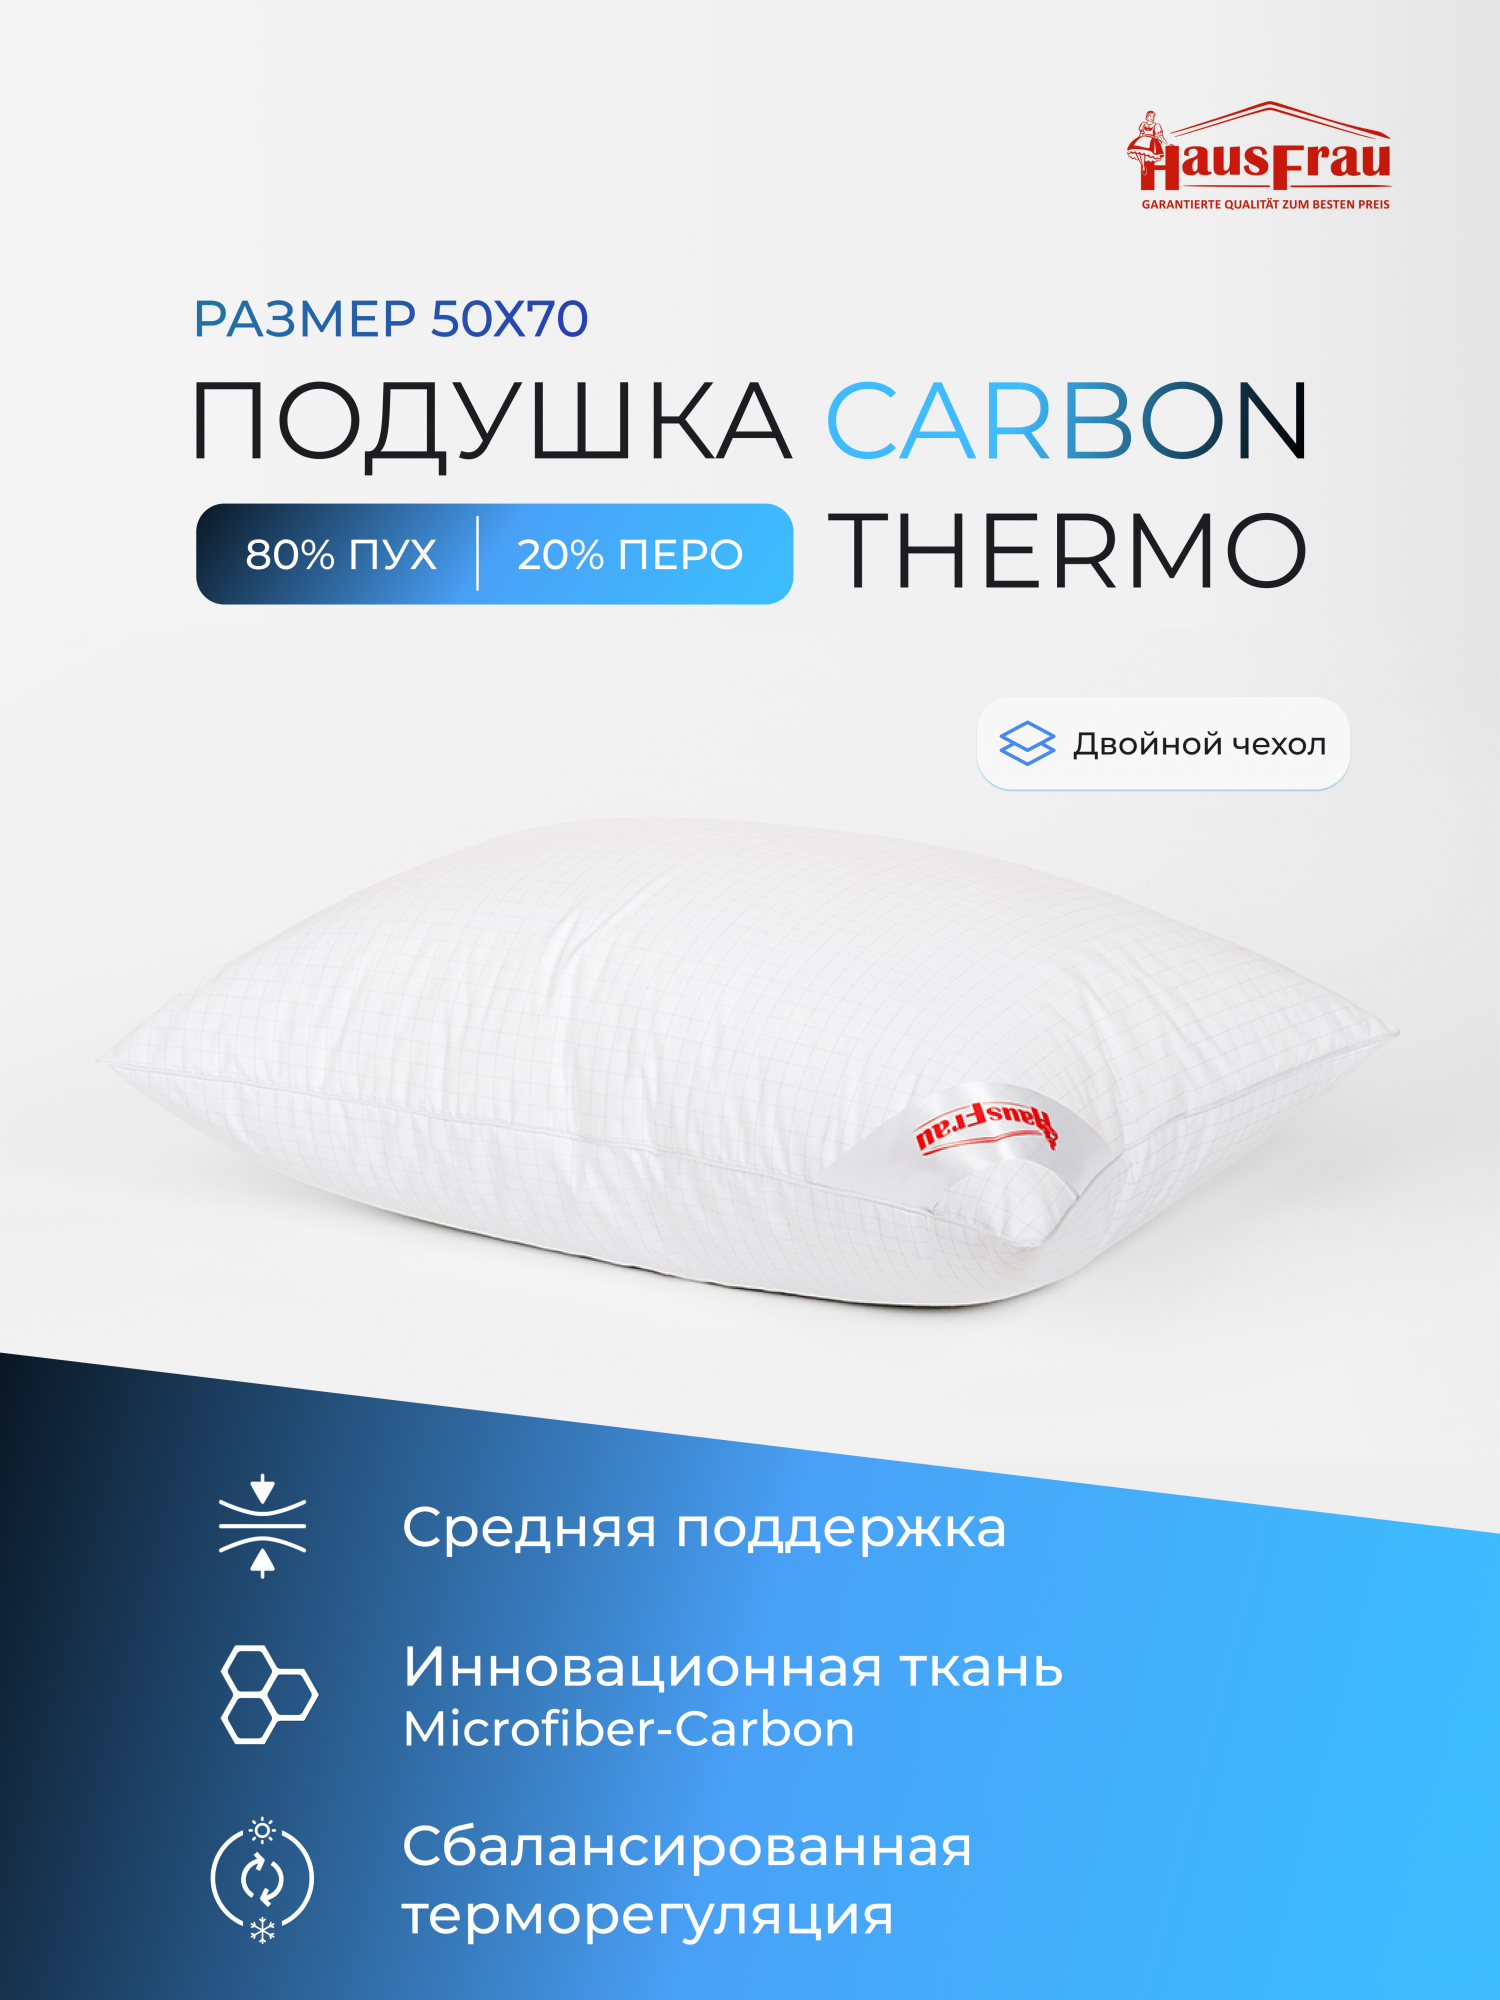 Подушка HausFrau Carbon Thermo средняя пух-перо 50х70